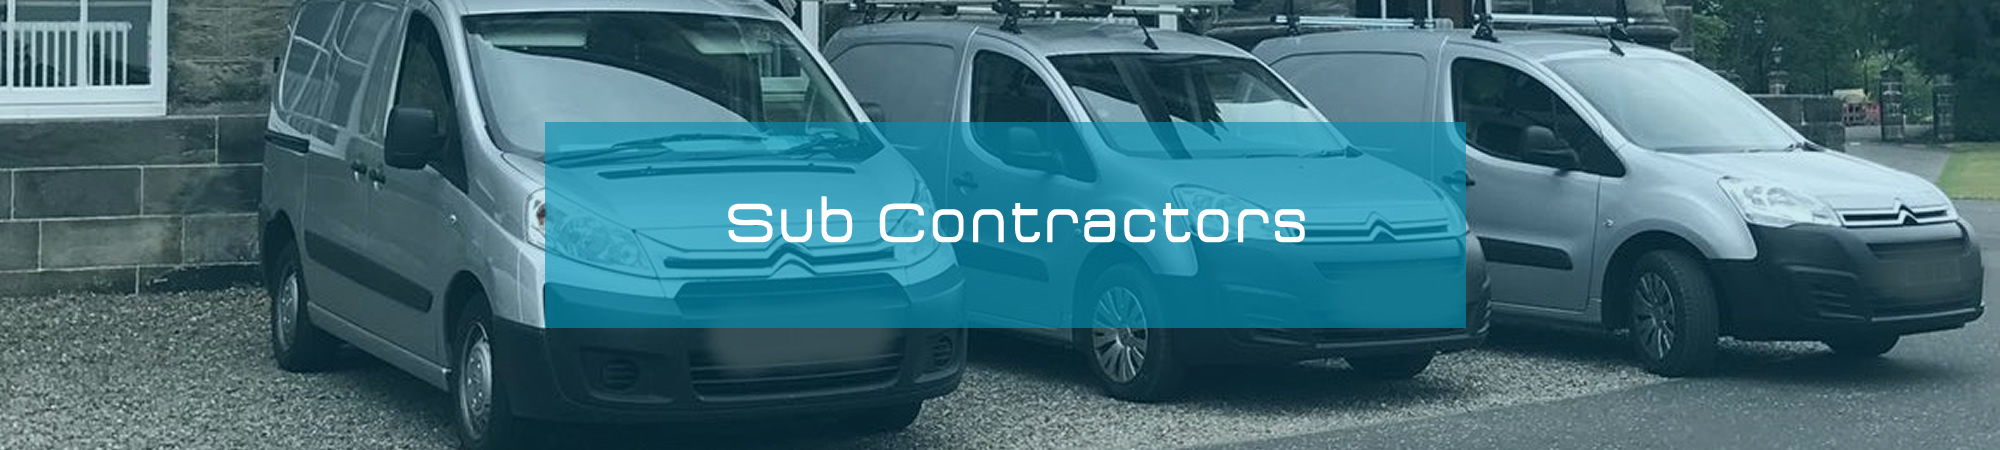 Sub Contractors